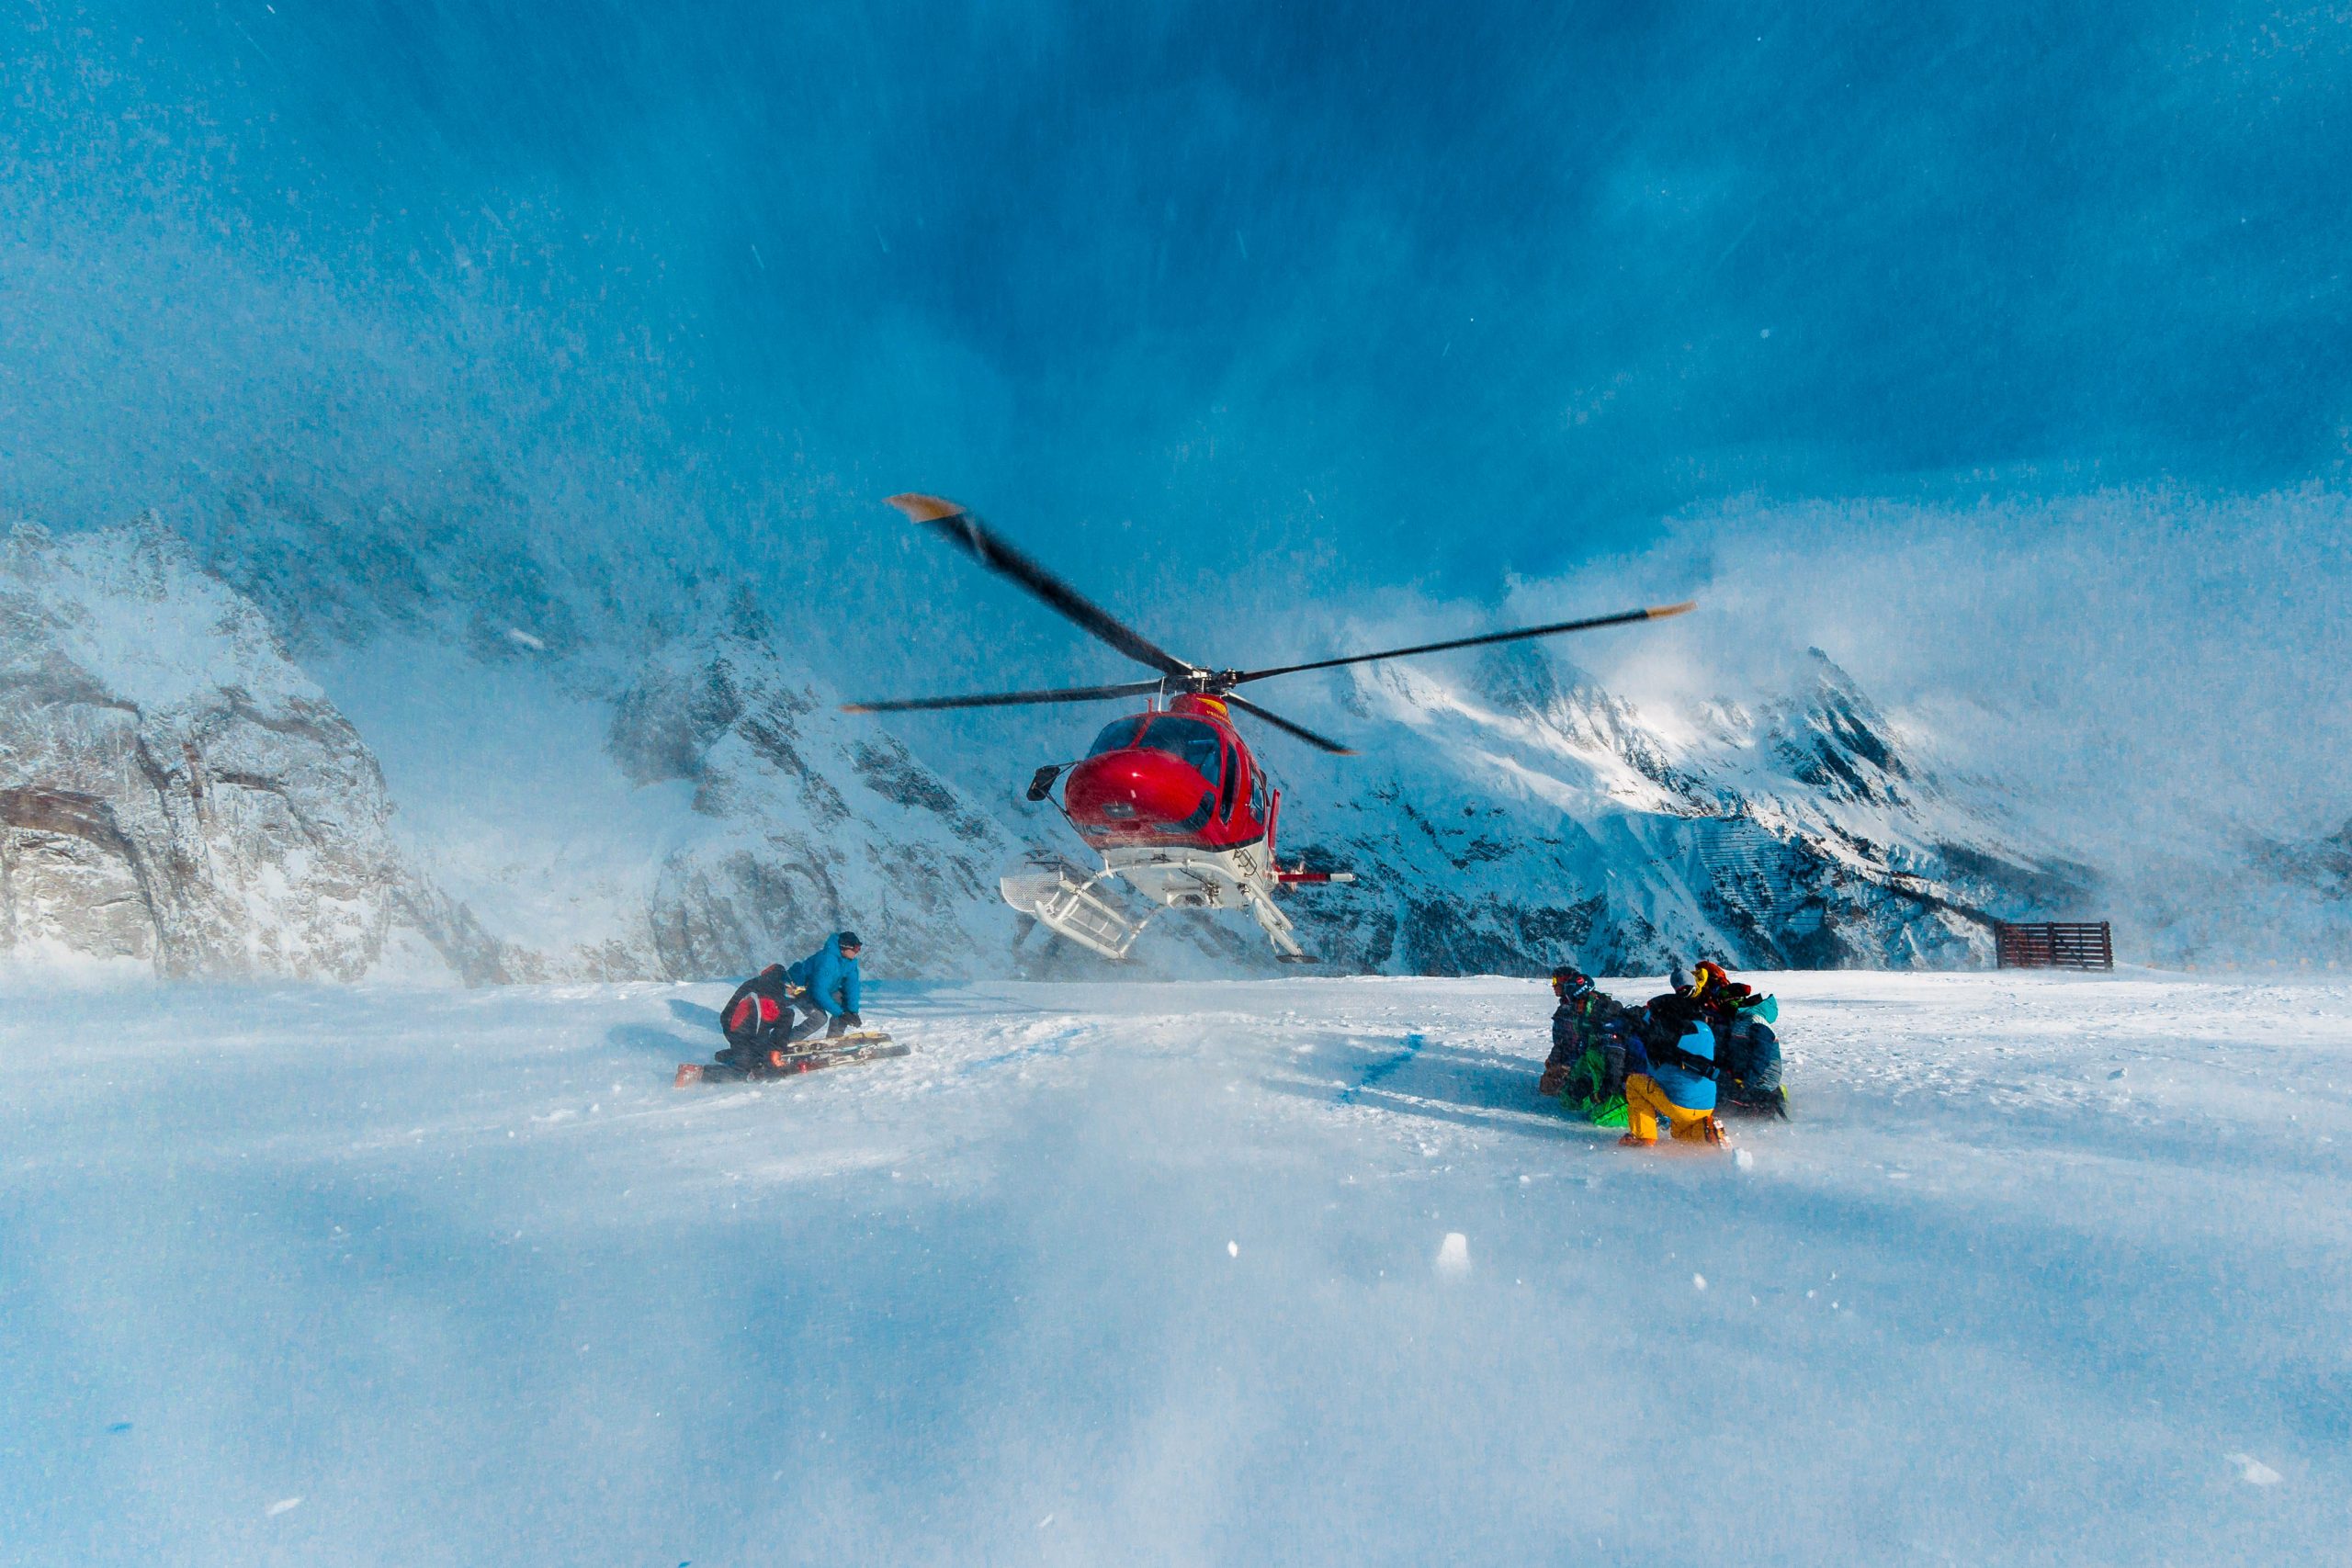 HELISKI
Si vous avez toujours rêvé de vous élever dans le ciel et d’atteindre des pentes éloignées et inaccessibles par voie terrestre, l’héliski est la réponse à vos désirs. A Courmayeur, vous pouvez décoller directement de notre station de ski pour explorer des paysages secrets et atterrir sur le Mont Fortin et d’autres sommets pour des descentes hors-piste passionnantes. Consultez les moniteurs de ski et les guides de montagne pour une expérience en toute sécurité. Après votre aventure hors-piste, vous pourrez vous rafraîchir dans un des restaurants du domaine skiable et terminer la journée par une descente. L’héliski est une activité hivernale riche en adrénaline que vous n’oublierez pas.
Découvrir plus
